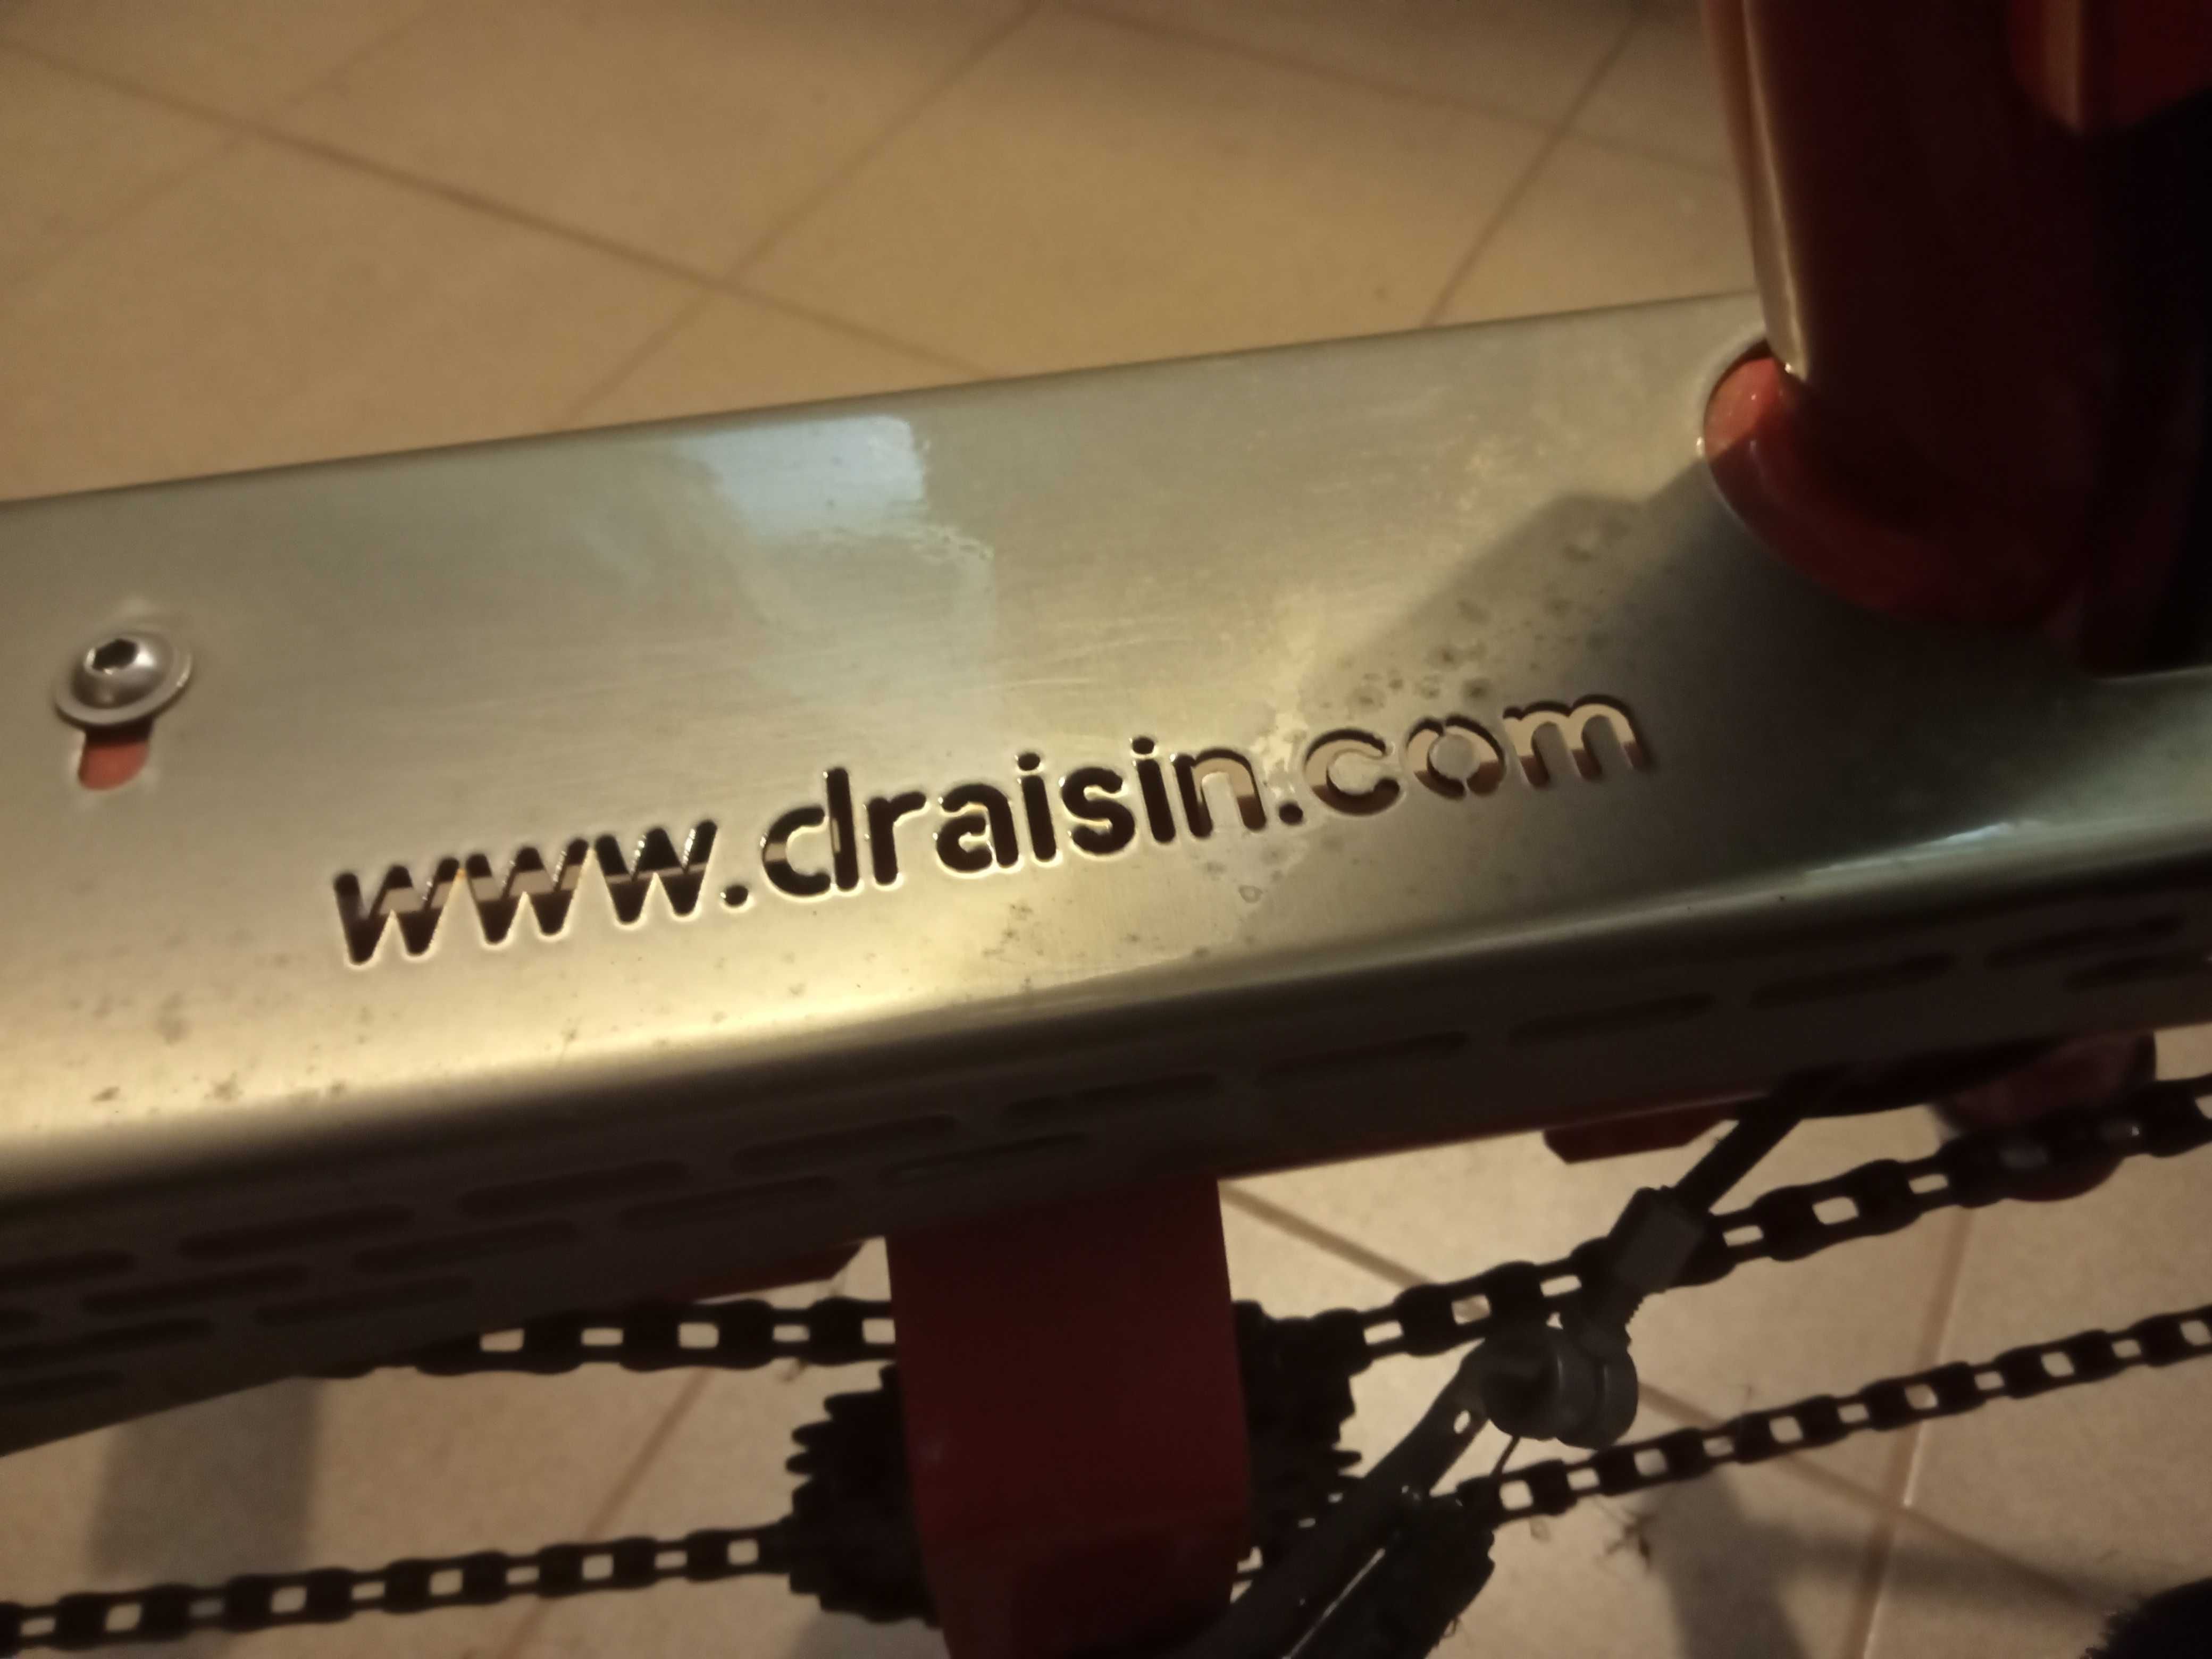 sprzedam rower tandem rehabilitacyjny trójkołowy Draisin